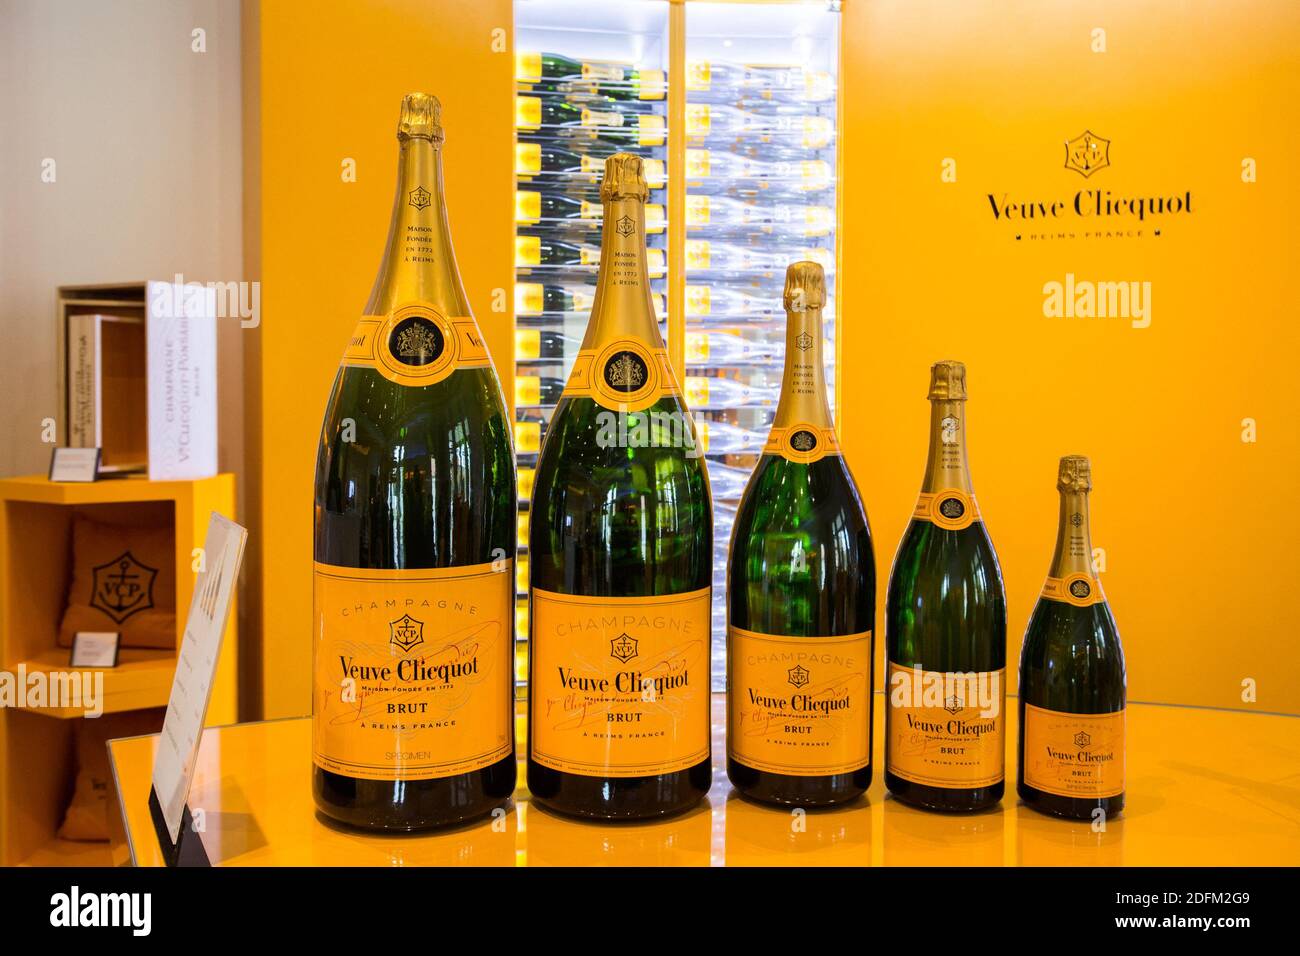 Ein Bild, das am 25. Oktober 2020 in Reims im Nordosten Frankreichs  aufgenommen wurde, zeigt Flaschen Veuve Clicquot Champagner. Veuve Clicquot  ist eine Niederlassung des französischen Luxusgüterunternehmens LVMH (Louis  Vuitton Moet Hennessy).